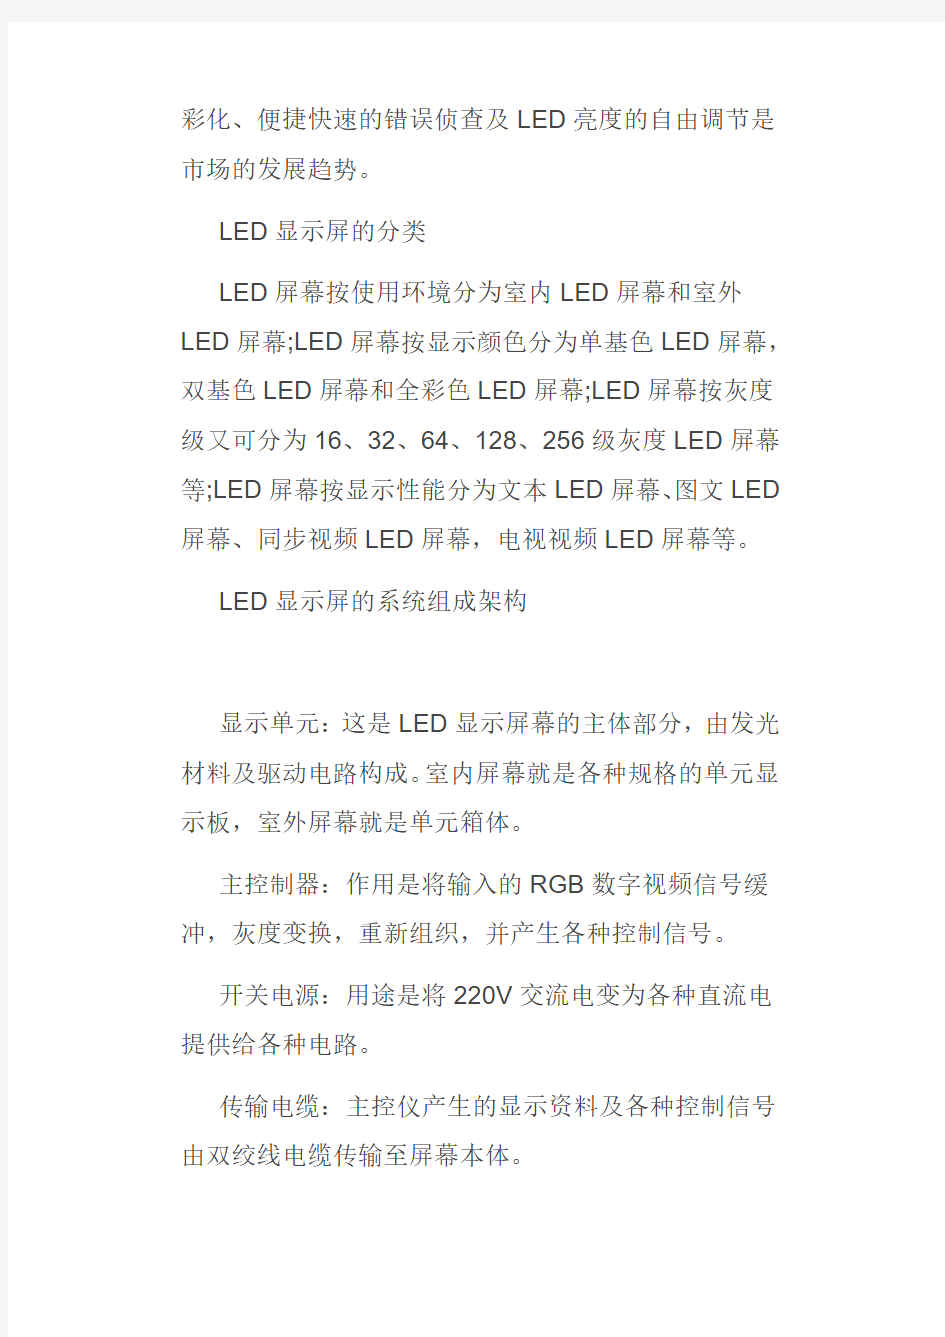 LED驱动芯片技术讲解